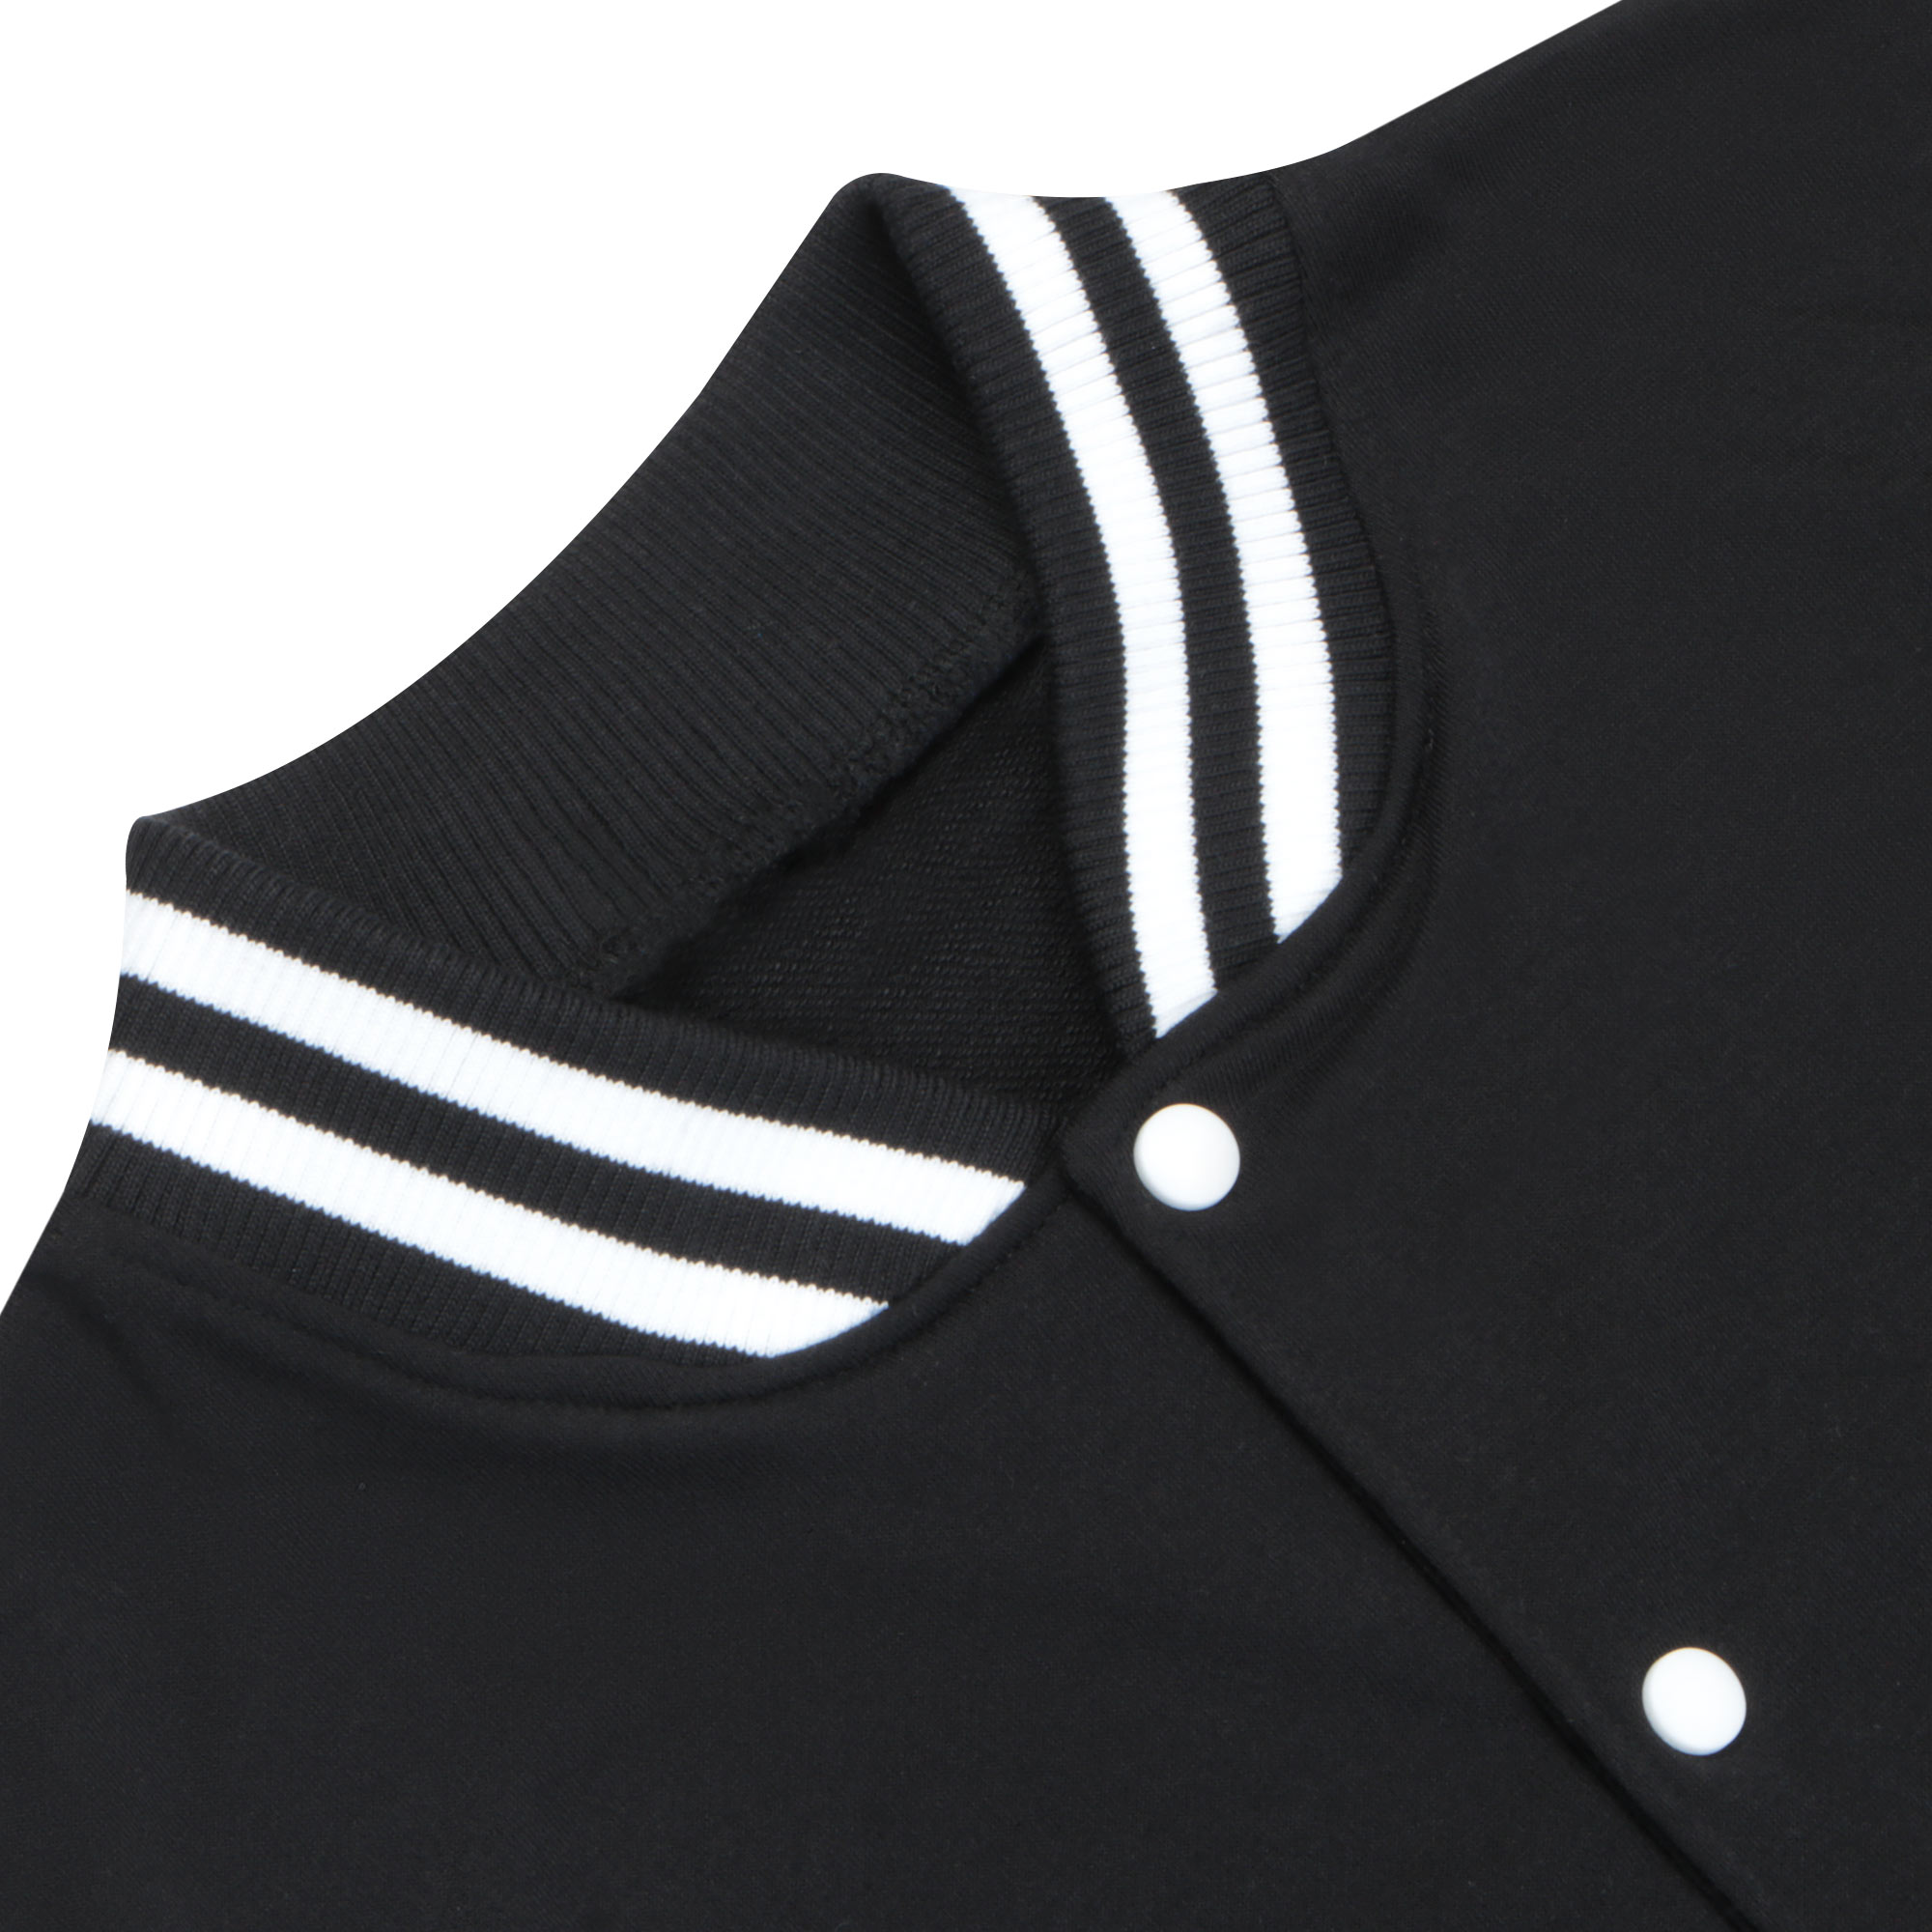 Бомбер Garment чёрный/белый M полиэстер, цвет черный, размер M - фото 4